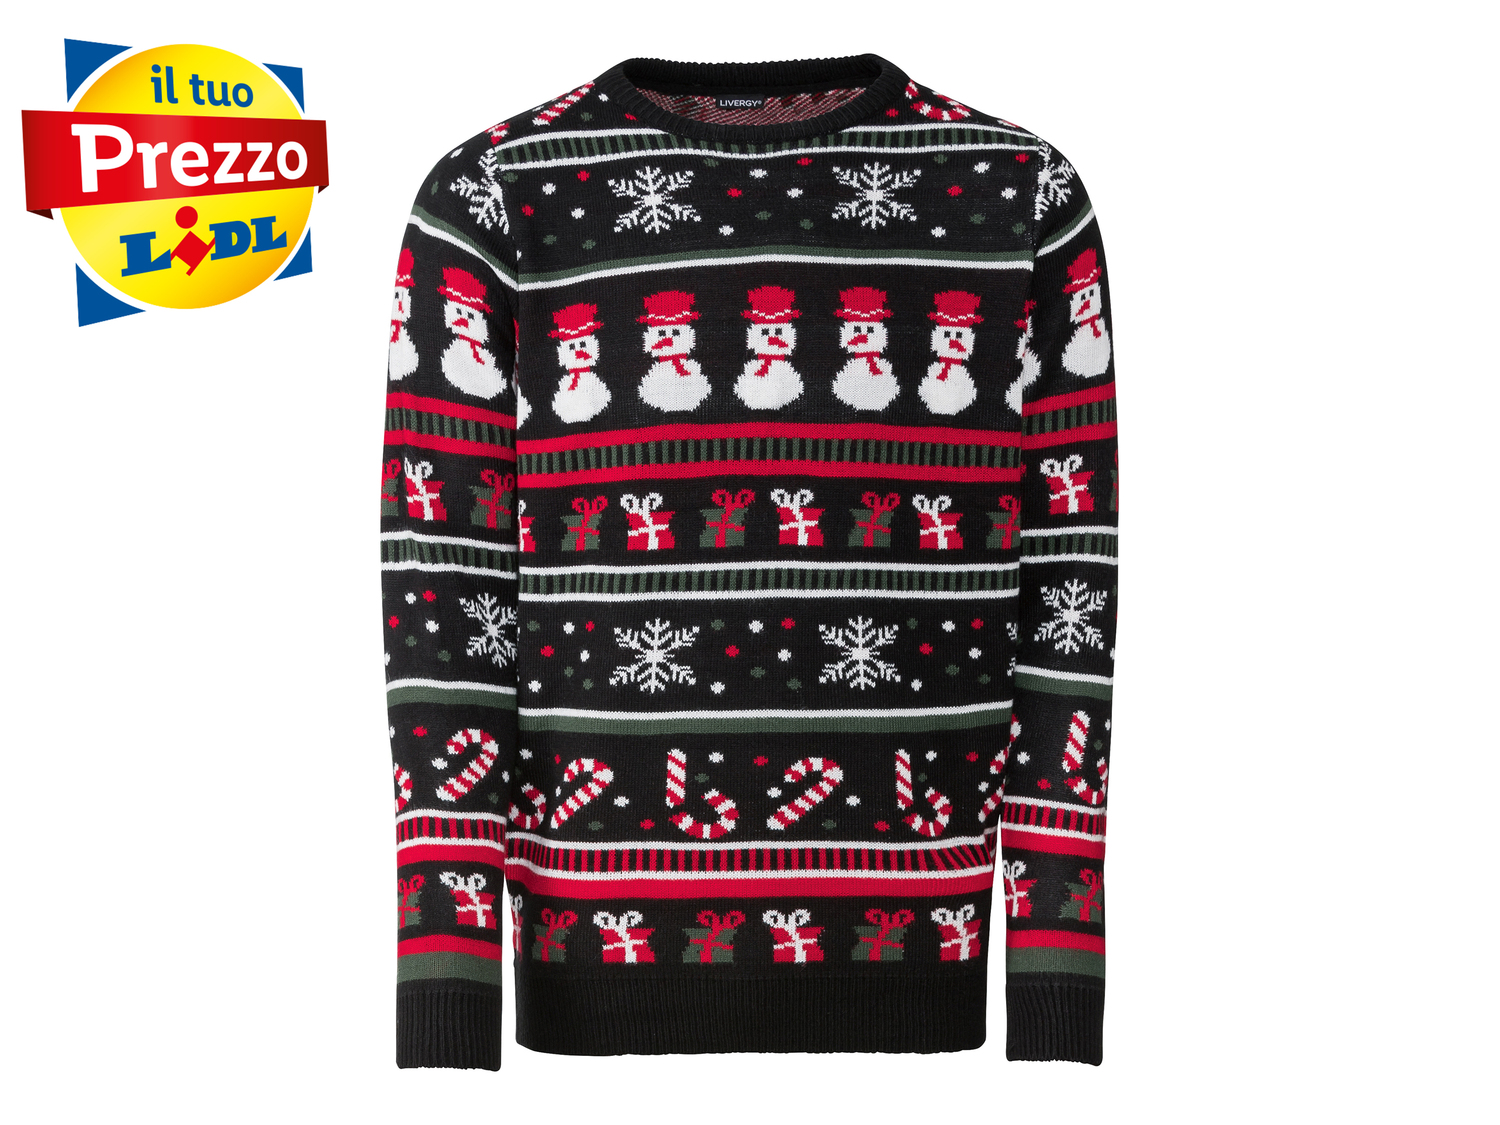 Pullover natalizio da uomo Livergy, prezzo 9.99 € 
Misure: S-XL
Taglie disponibili

Caratteristiche

- ...